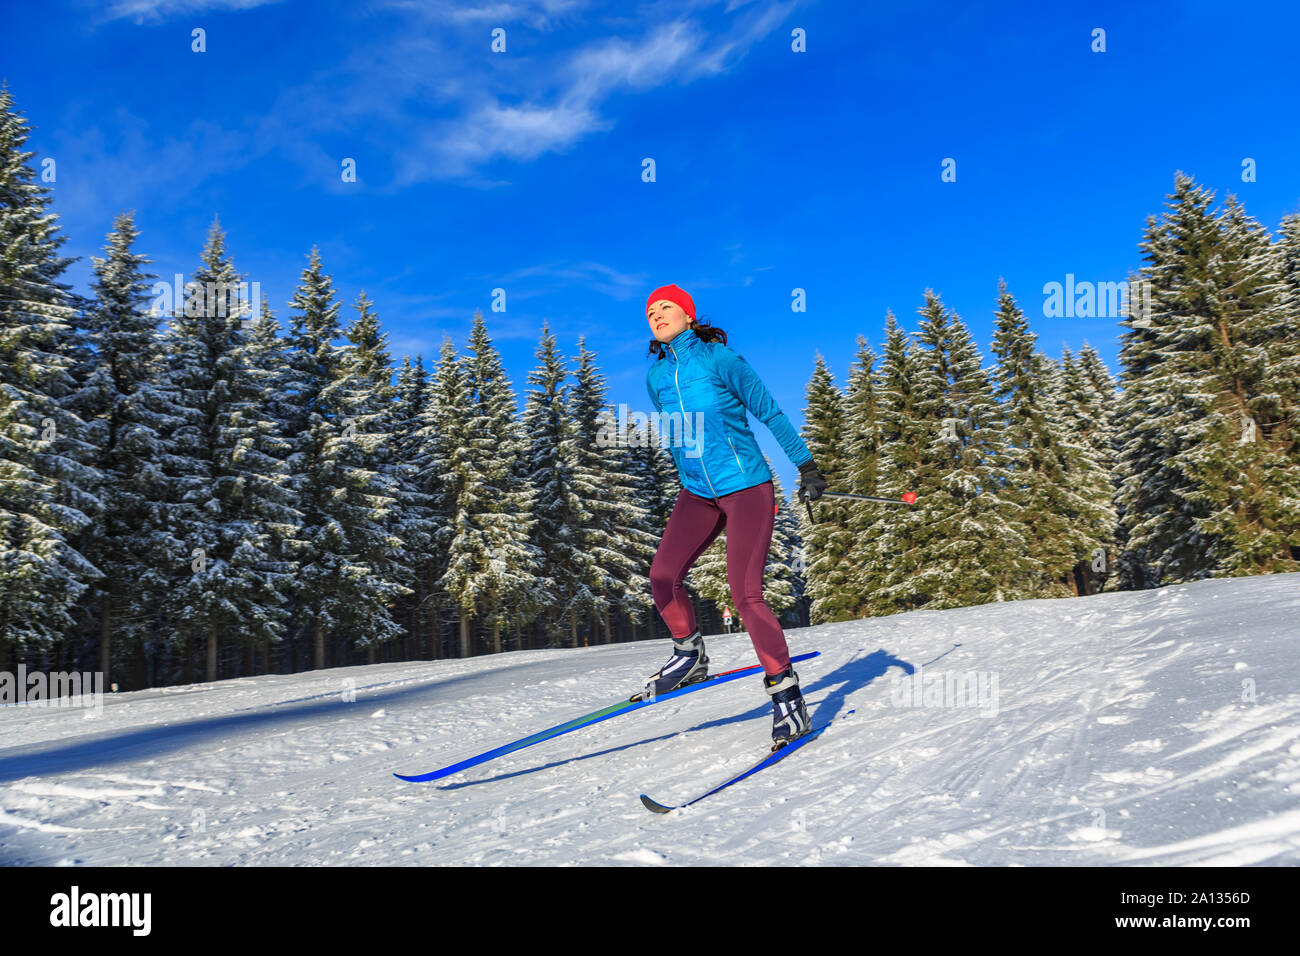 Une femme à ski de fond ou ski de tournant dans la forêt d'hiver Banque D'Images